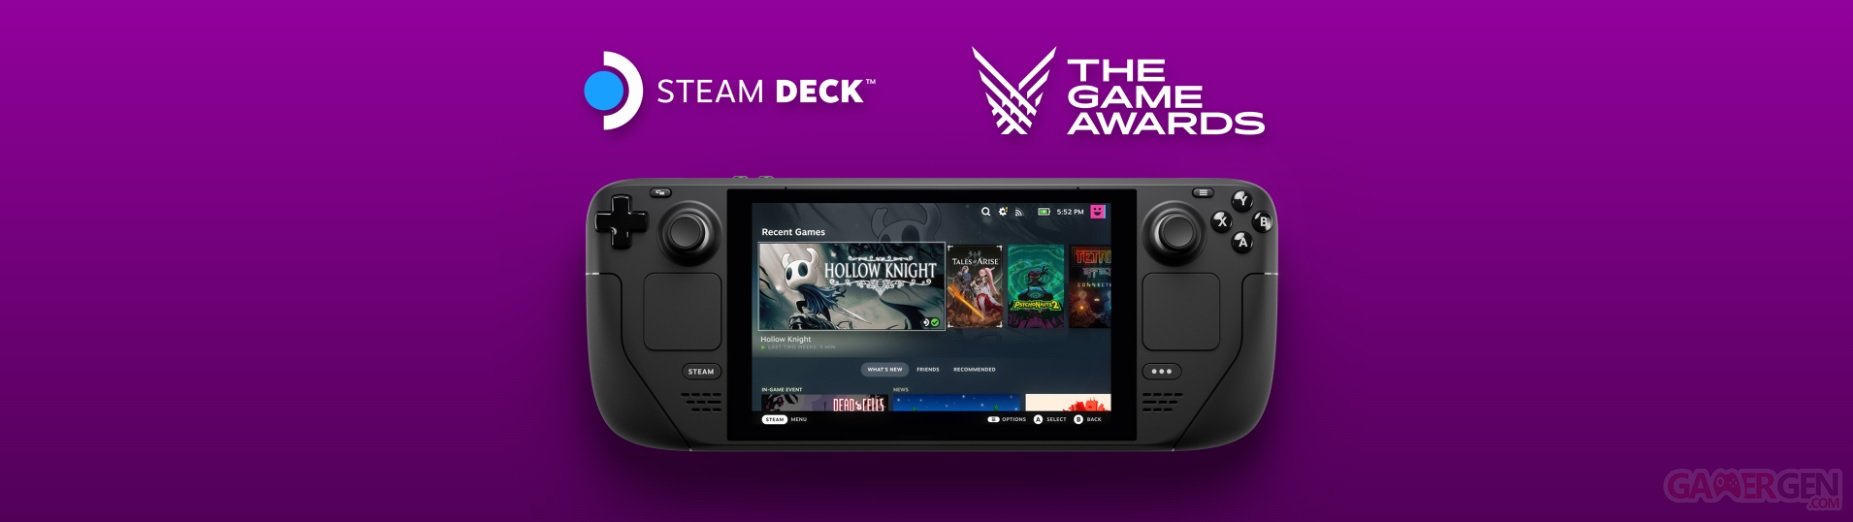 Steam deck, une nouvelle console portable pour jouer à des jeux PC